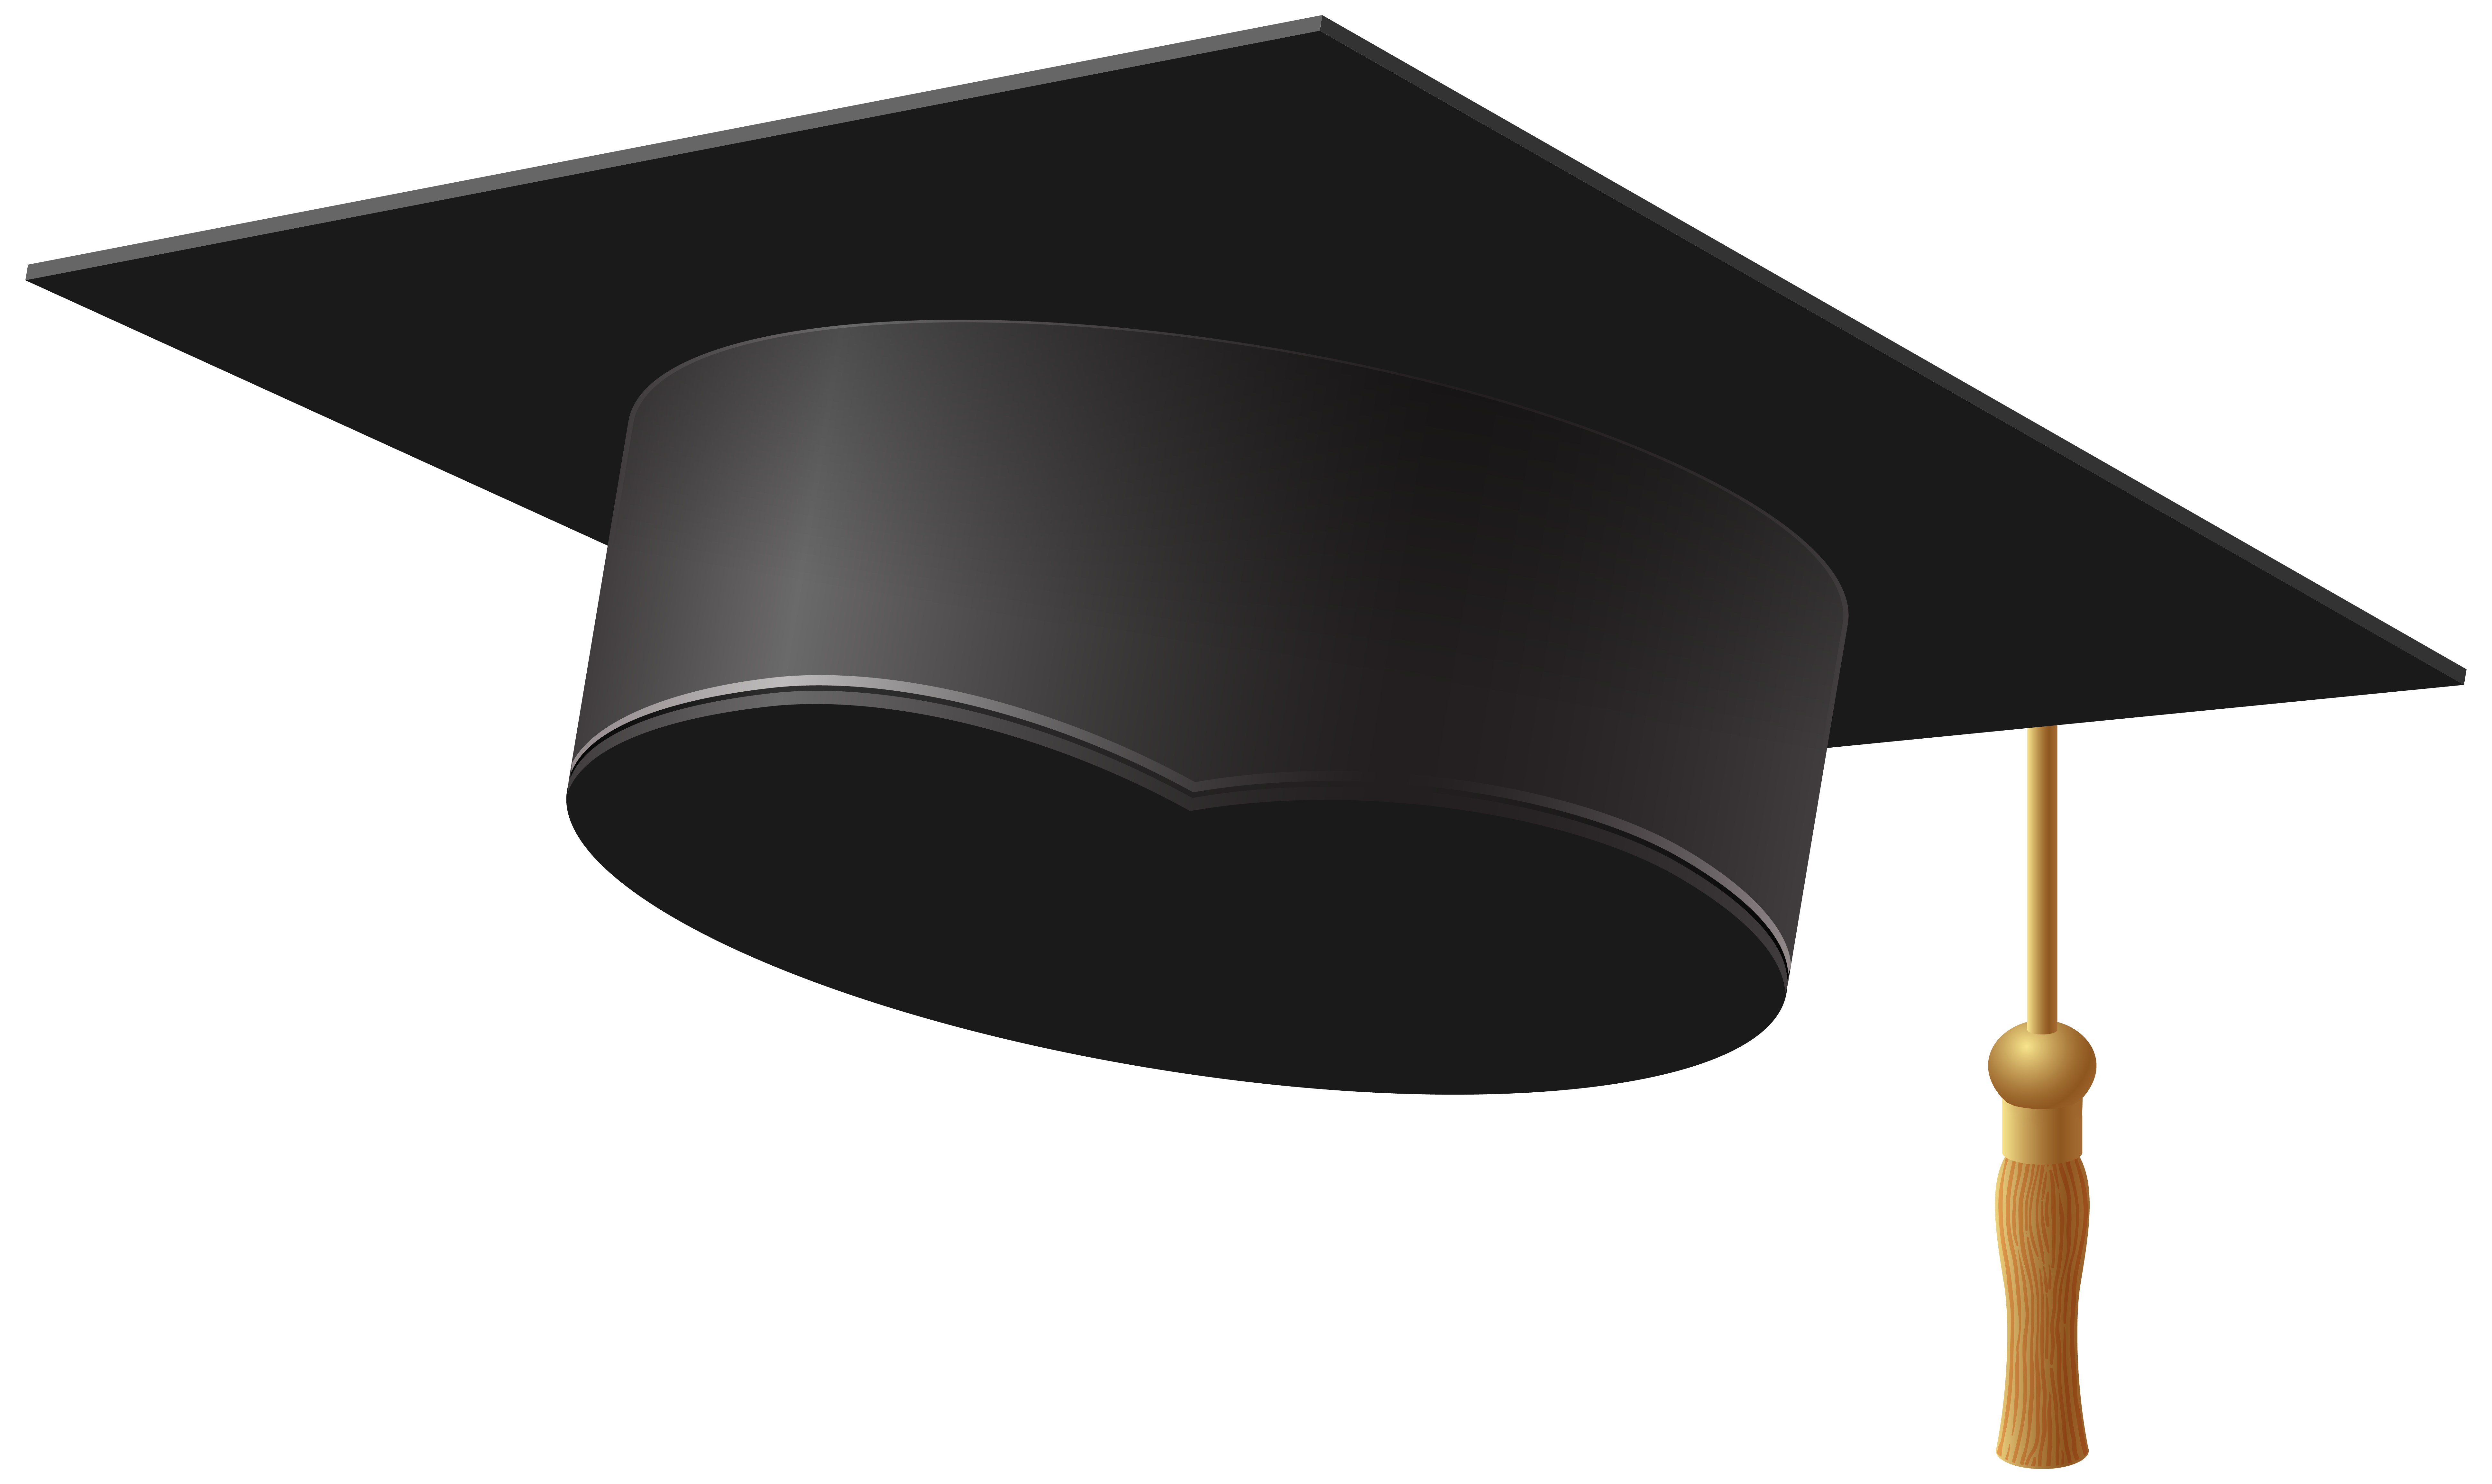 Dr. graduation cap respondent